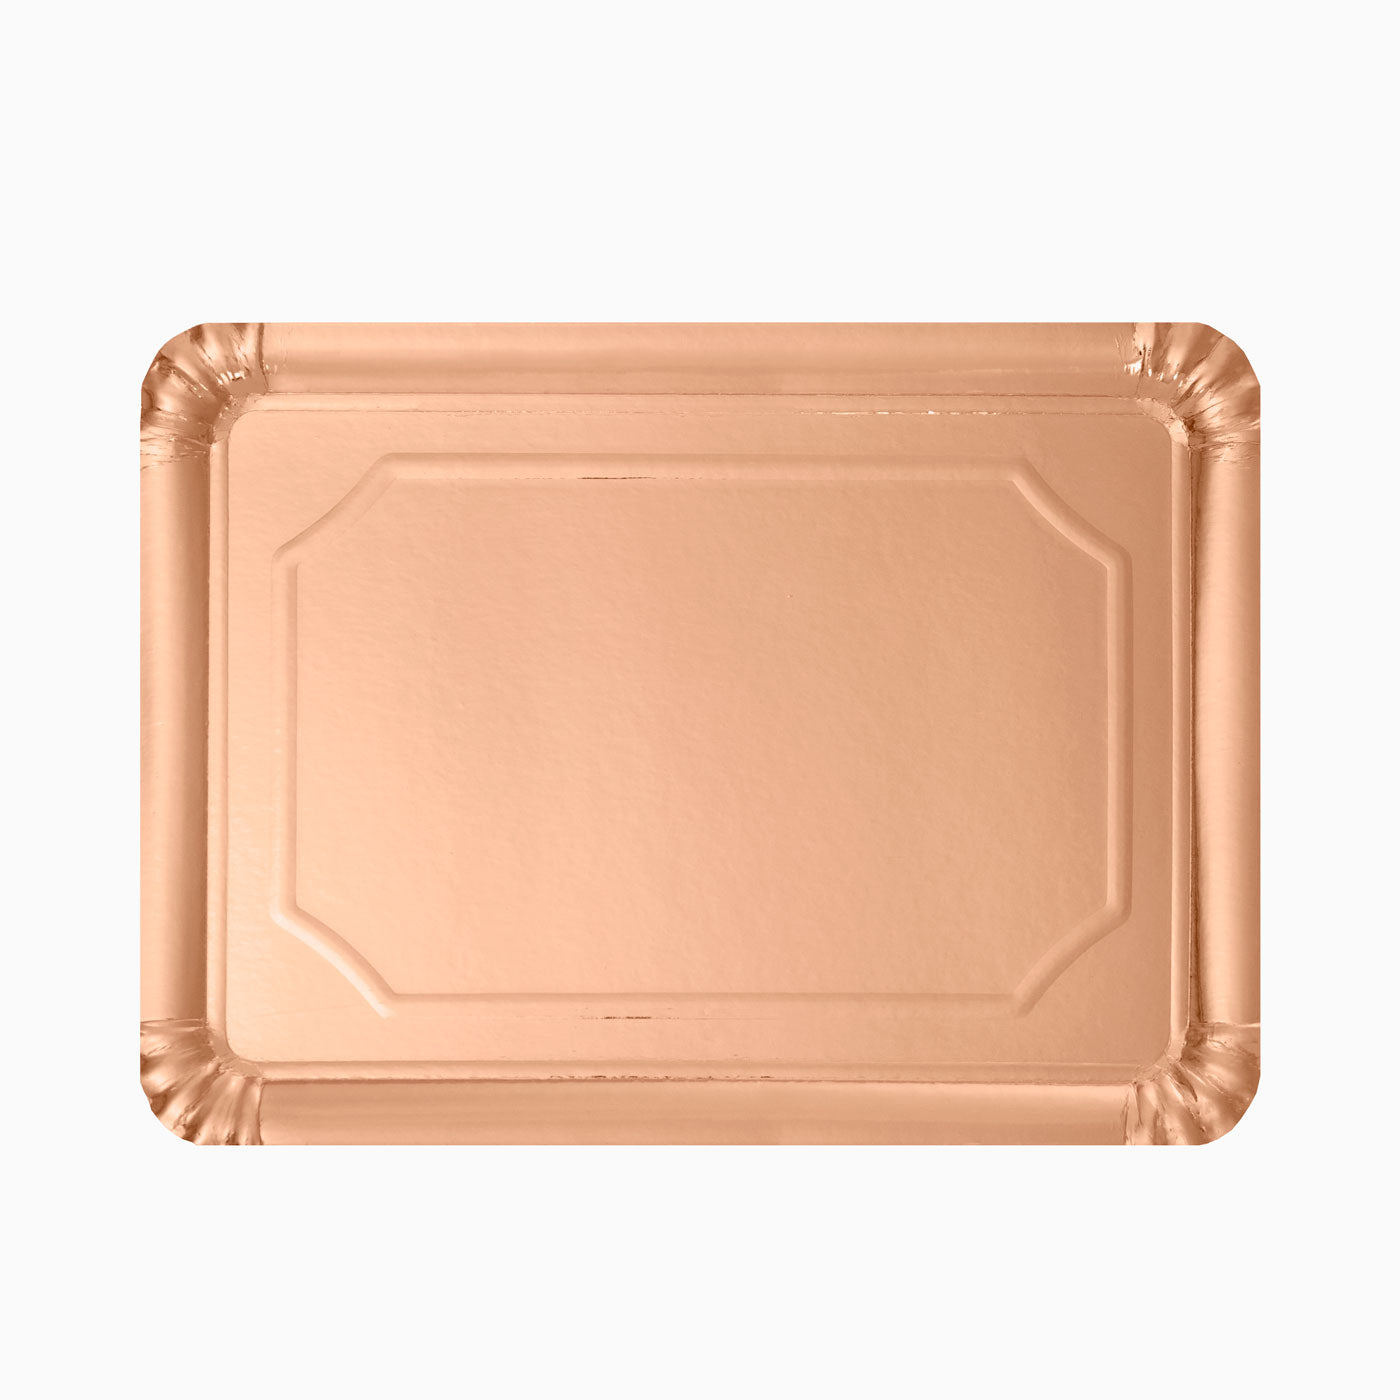 Metallic rectangular tray 25 x 34 cm pink gold